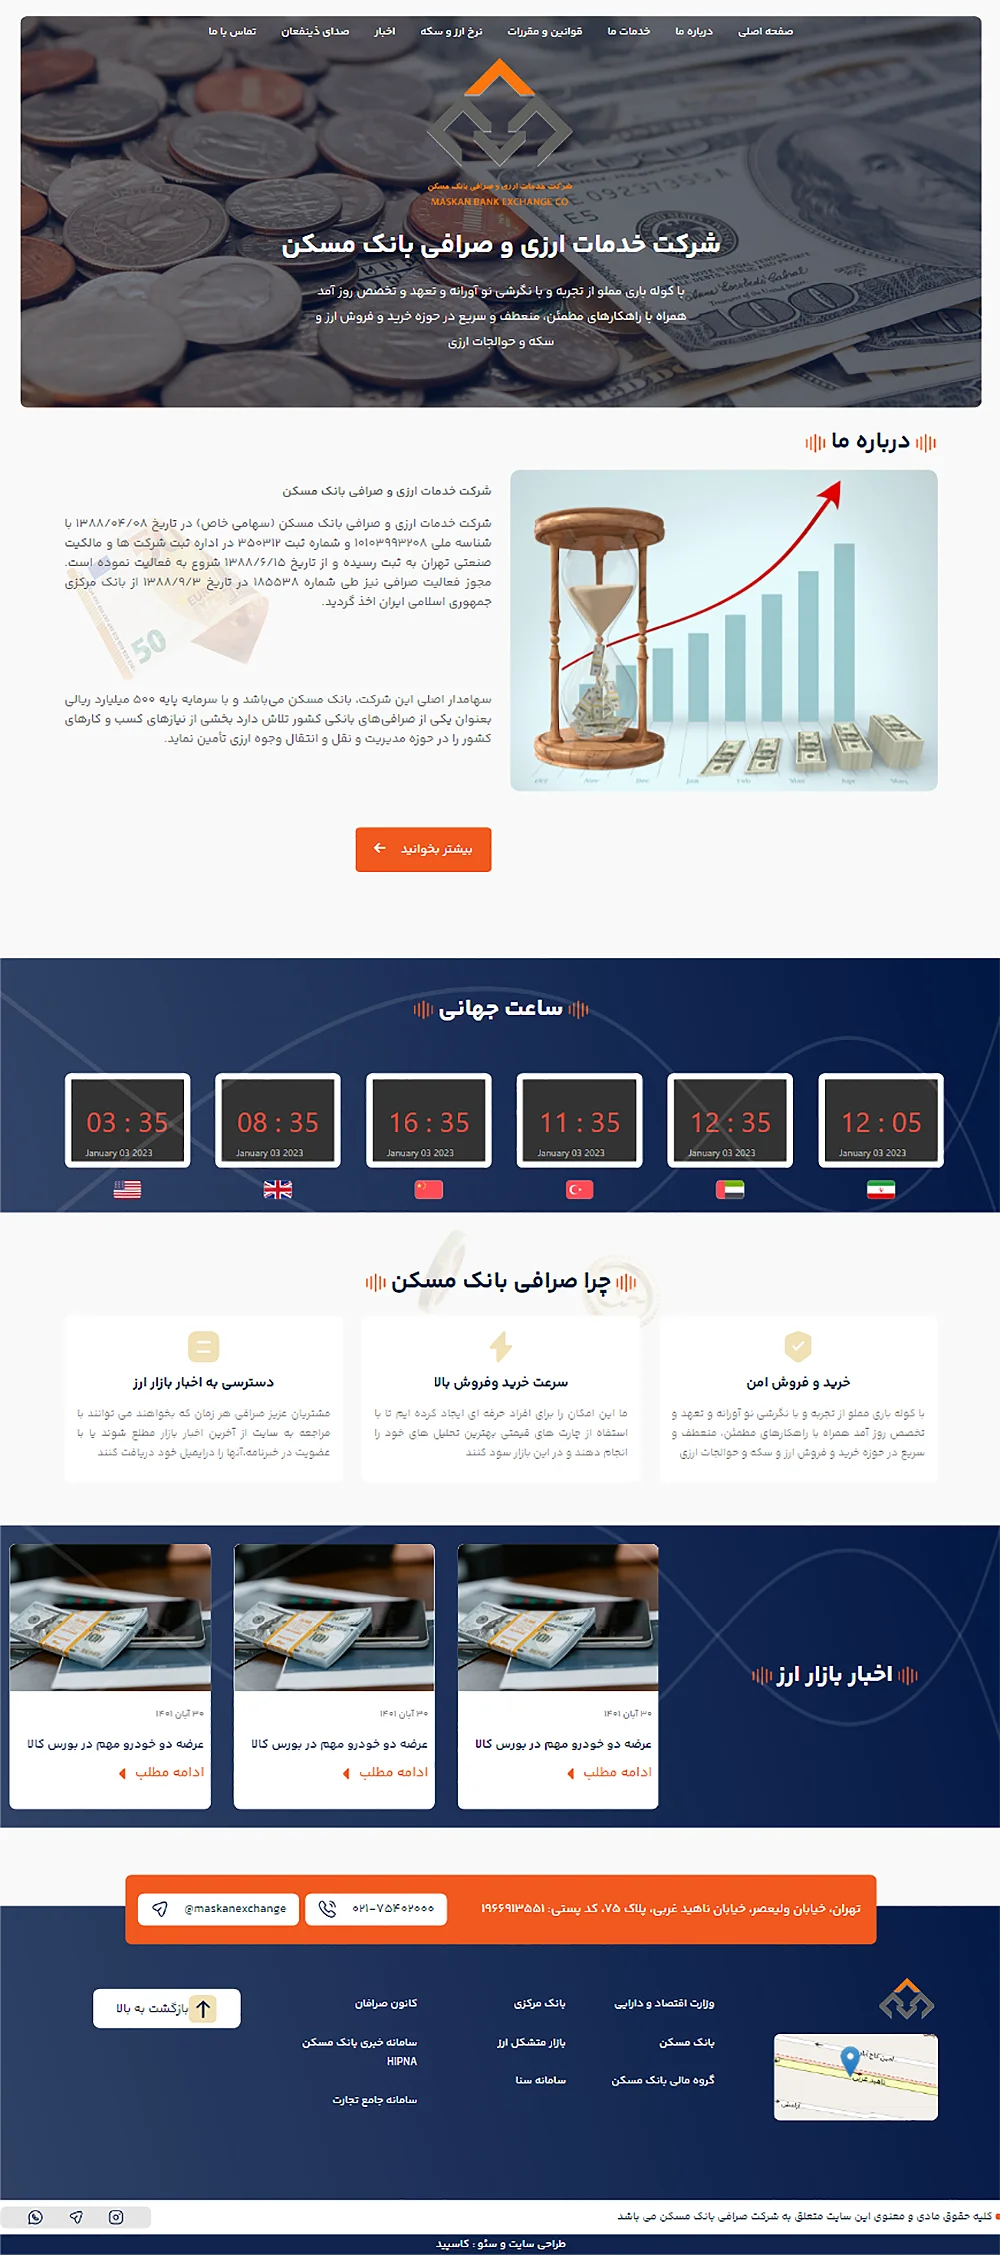 نمونه کار طراحی و بهینه سازی سایت صرافی بانک مسکن